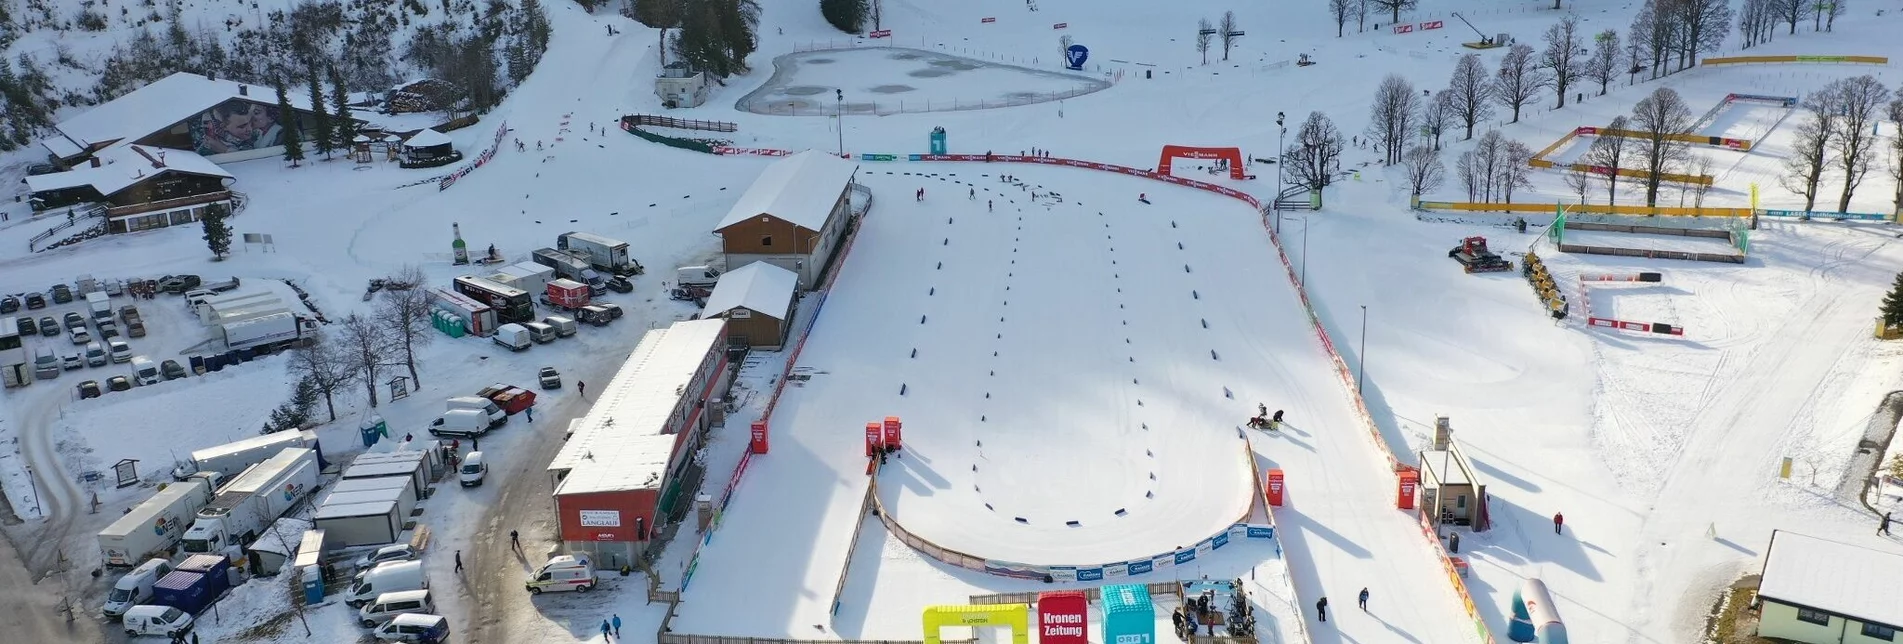 Cross-Country Skiing World Cup Trail - Touren-Impression #1 | © Erlebnisregion Schladming-Dachstein